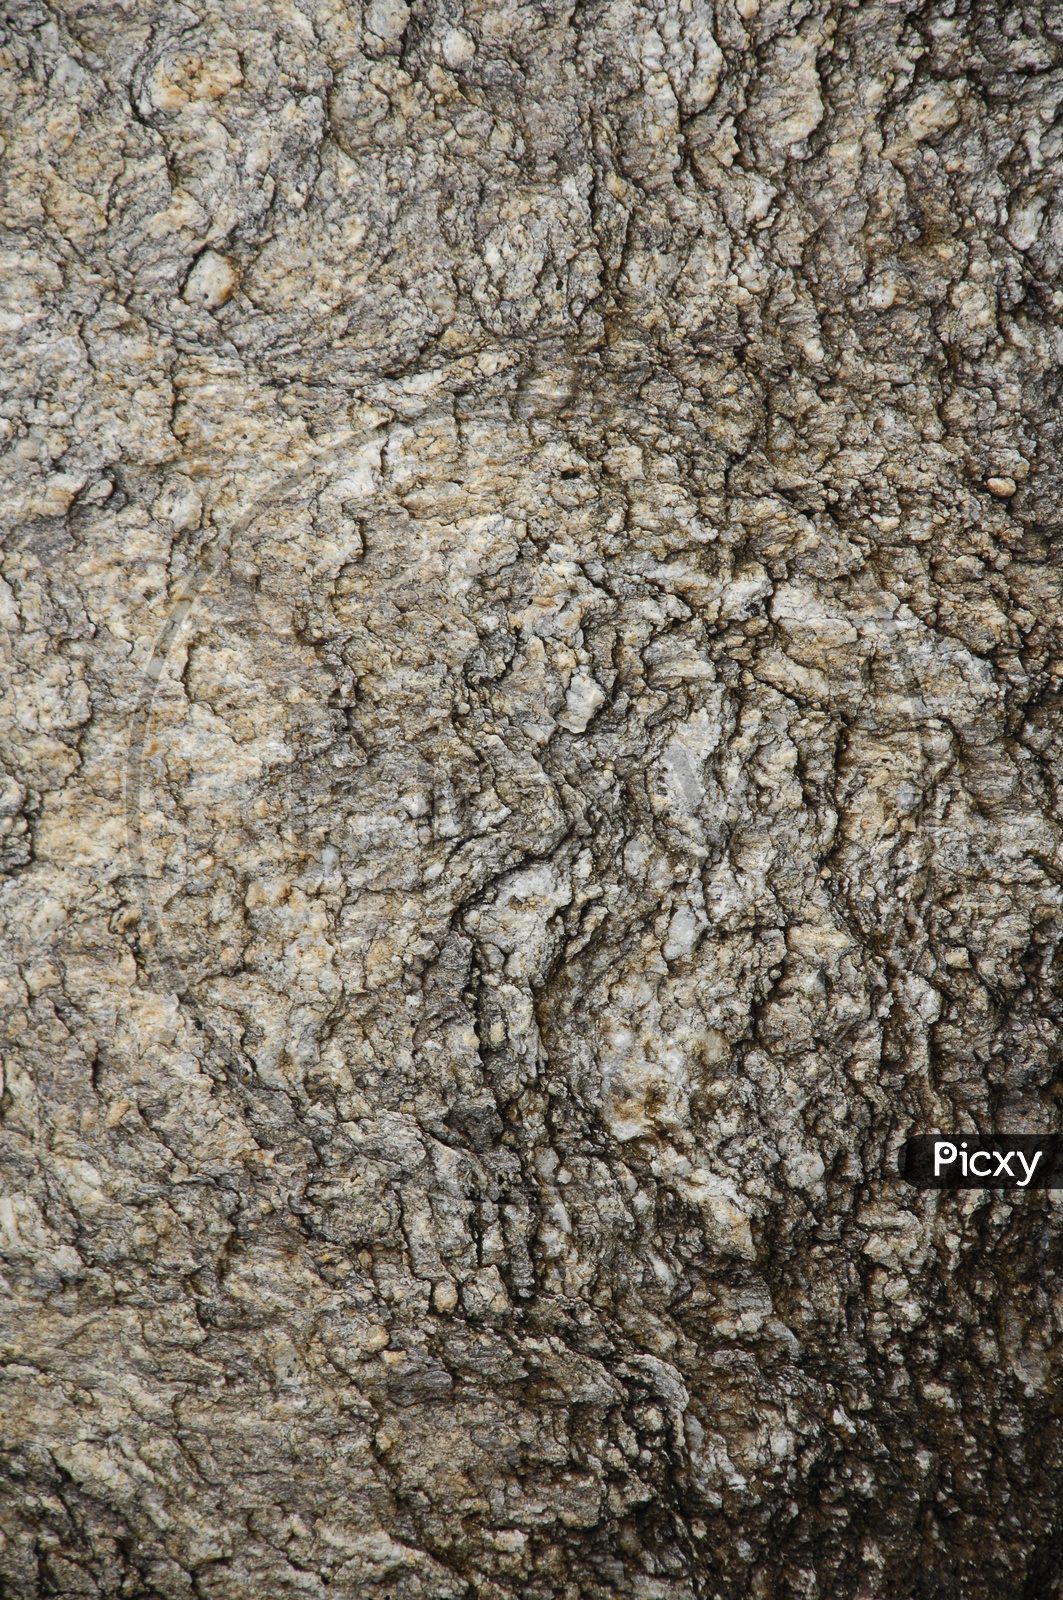 Close shot of a black rock